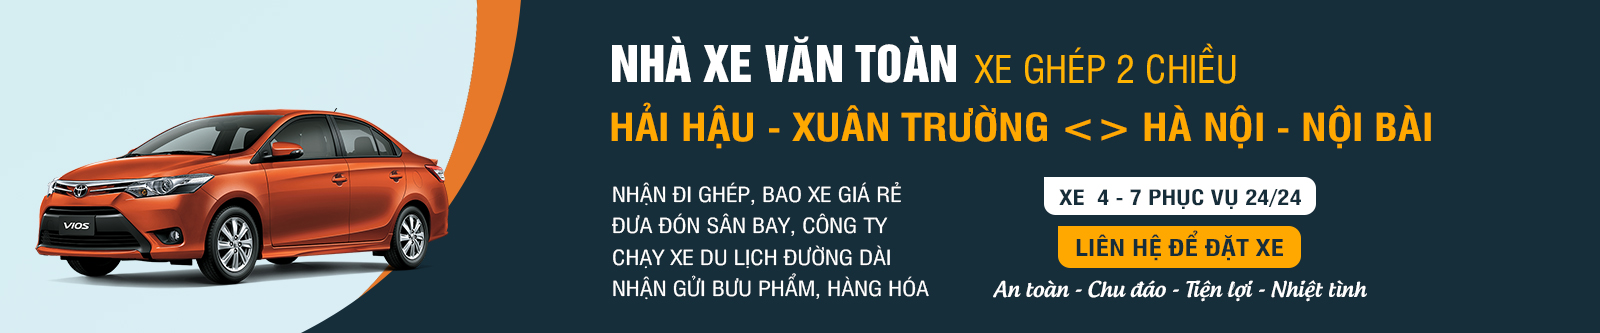 Xe ghép Văn Toàn tuyến Hà Nội - Nam Định